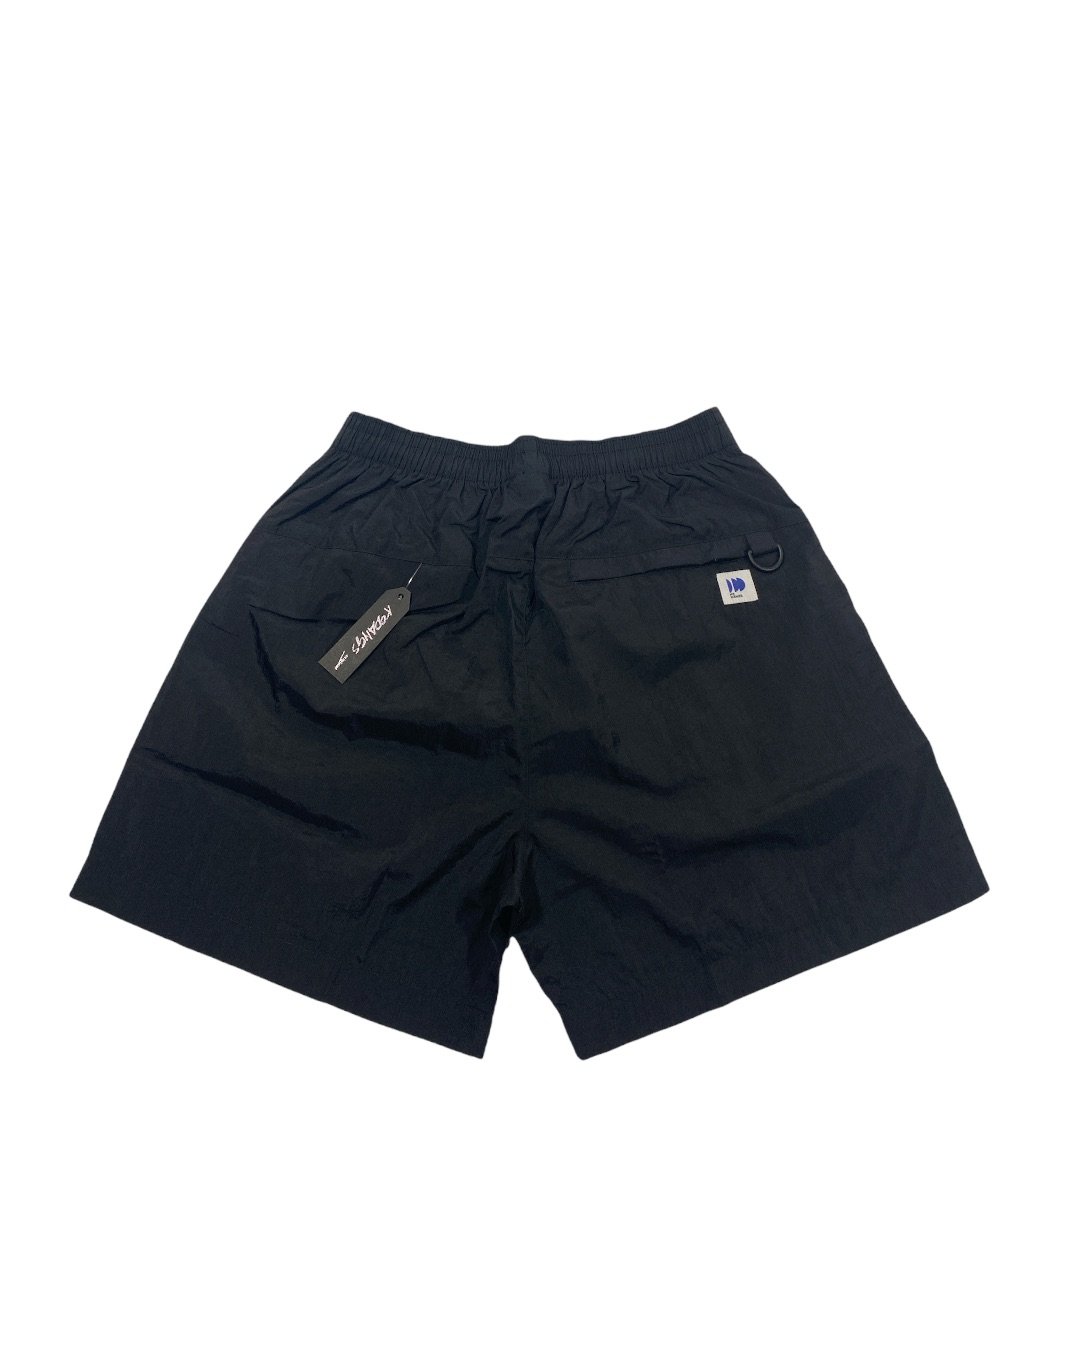 Umbre Shorts (Black)